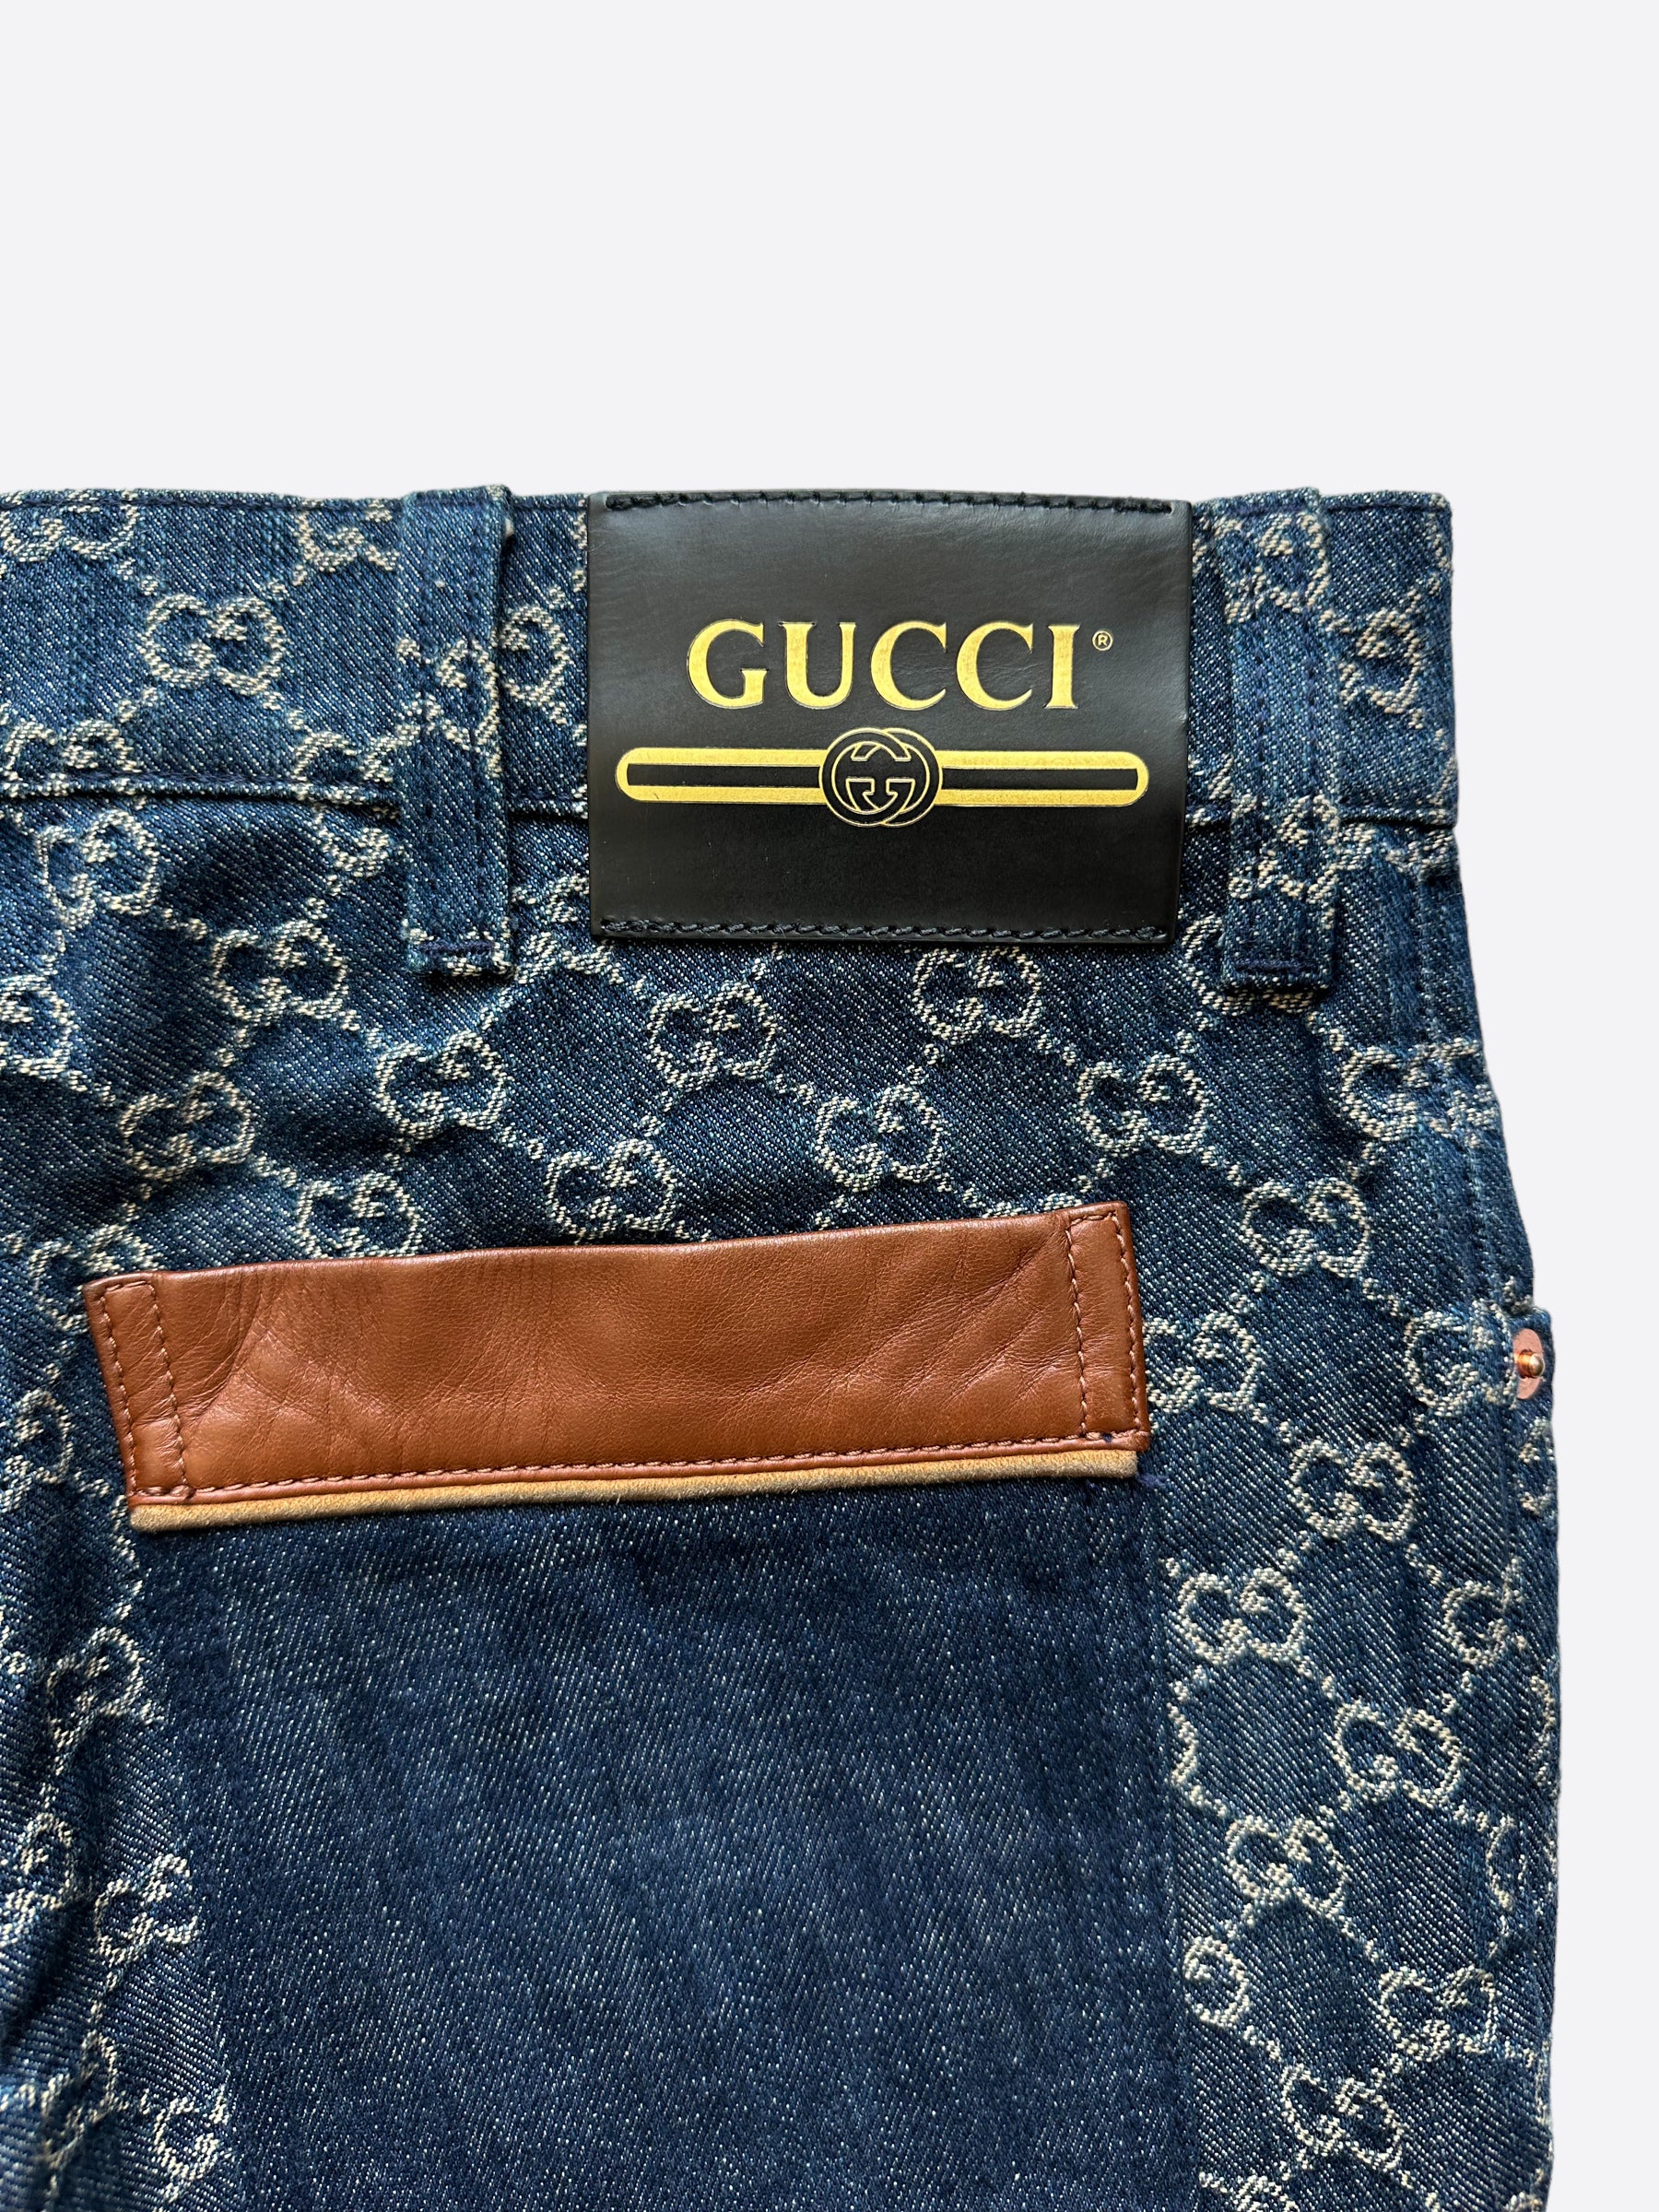 Gucci Black & Off-White GG Monogram Jeans